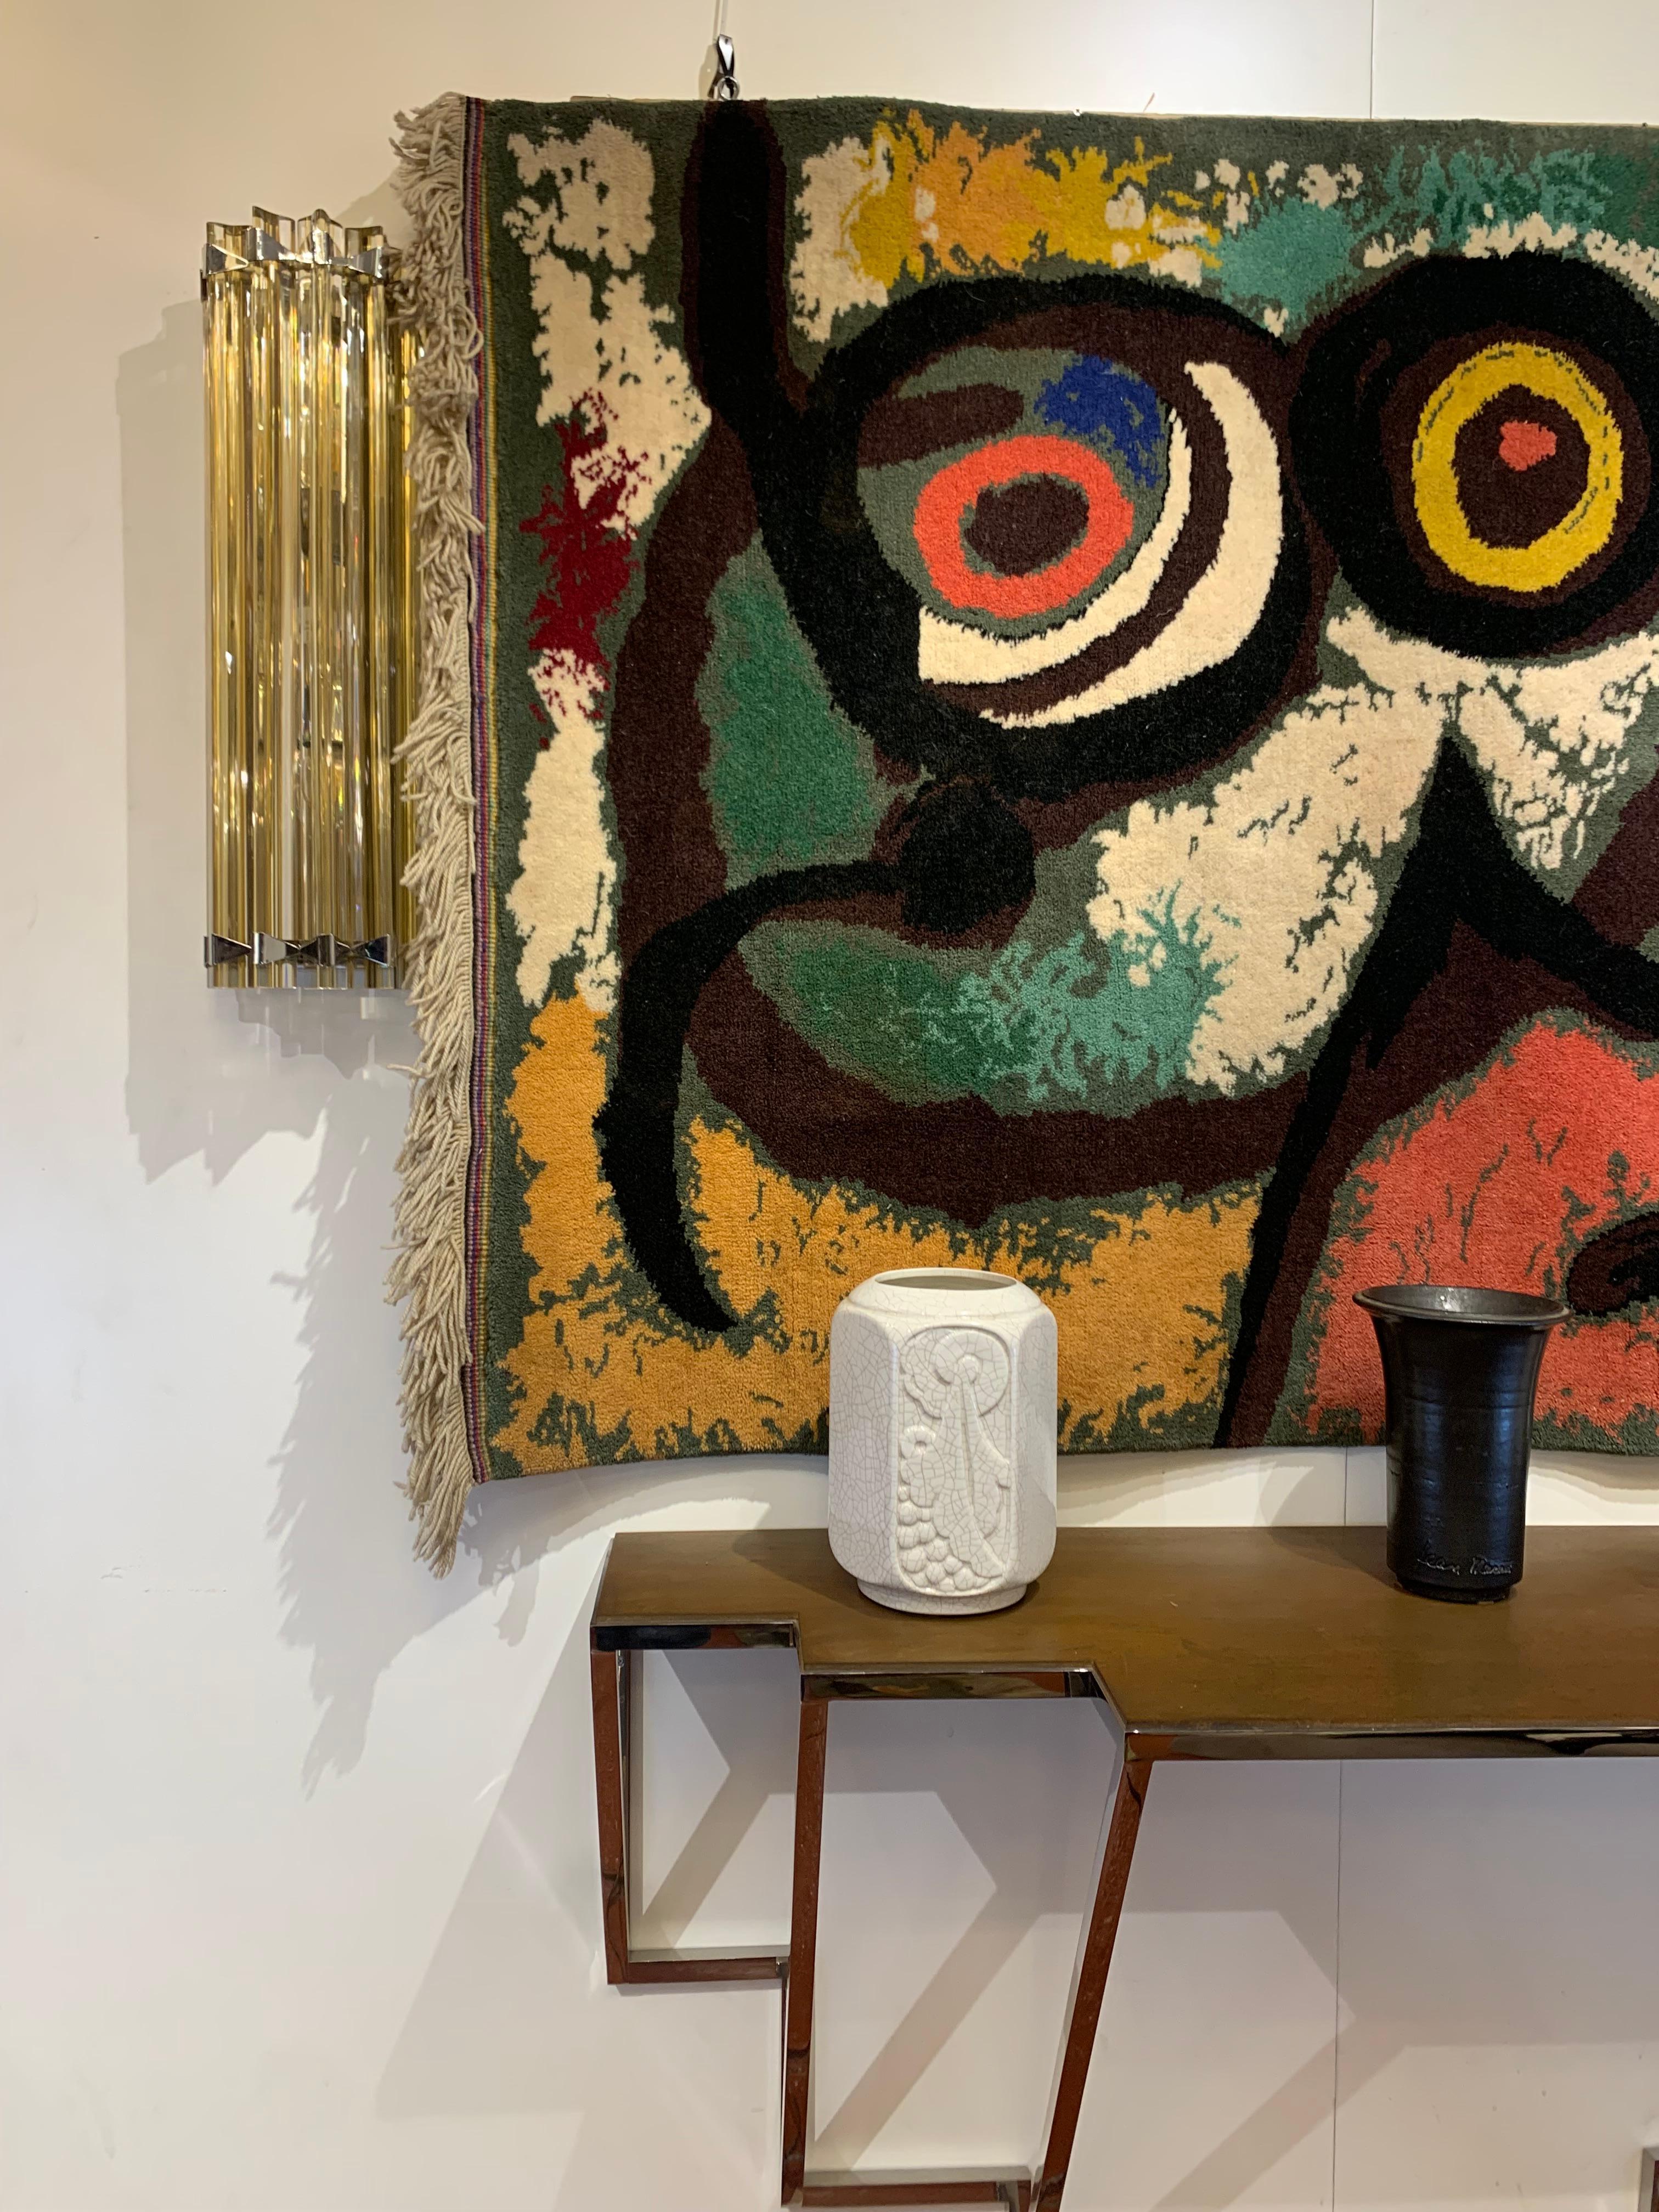 Magnifique tapisserie marquée de l'artiste/peintre espagnol Joan Miro d'après son tableau Femme et Oiseaux (1966).
L'approche ludique et expérimentale de l'art est caractéristique de l'œuvre de Miros.
Joan Miro est littéralement à l'origine de la